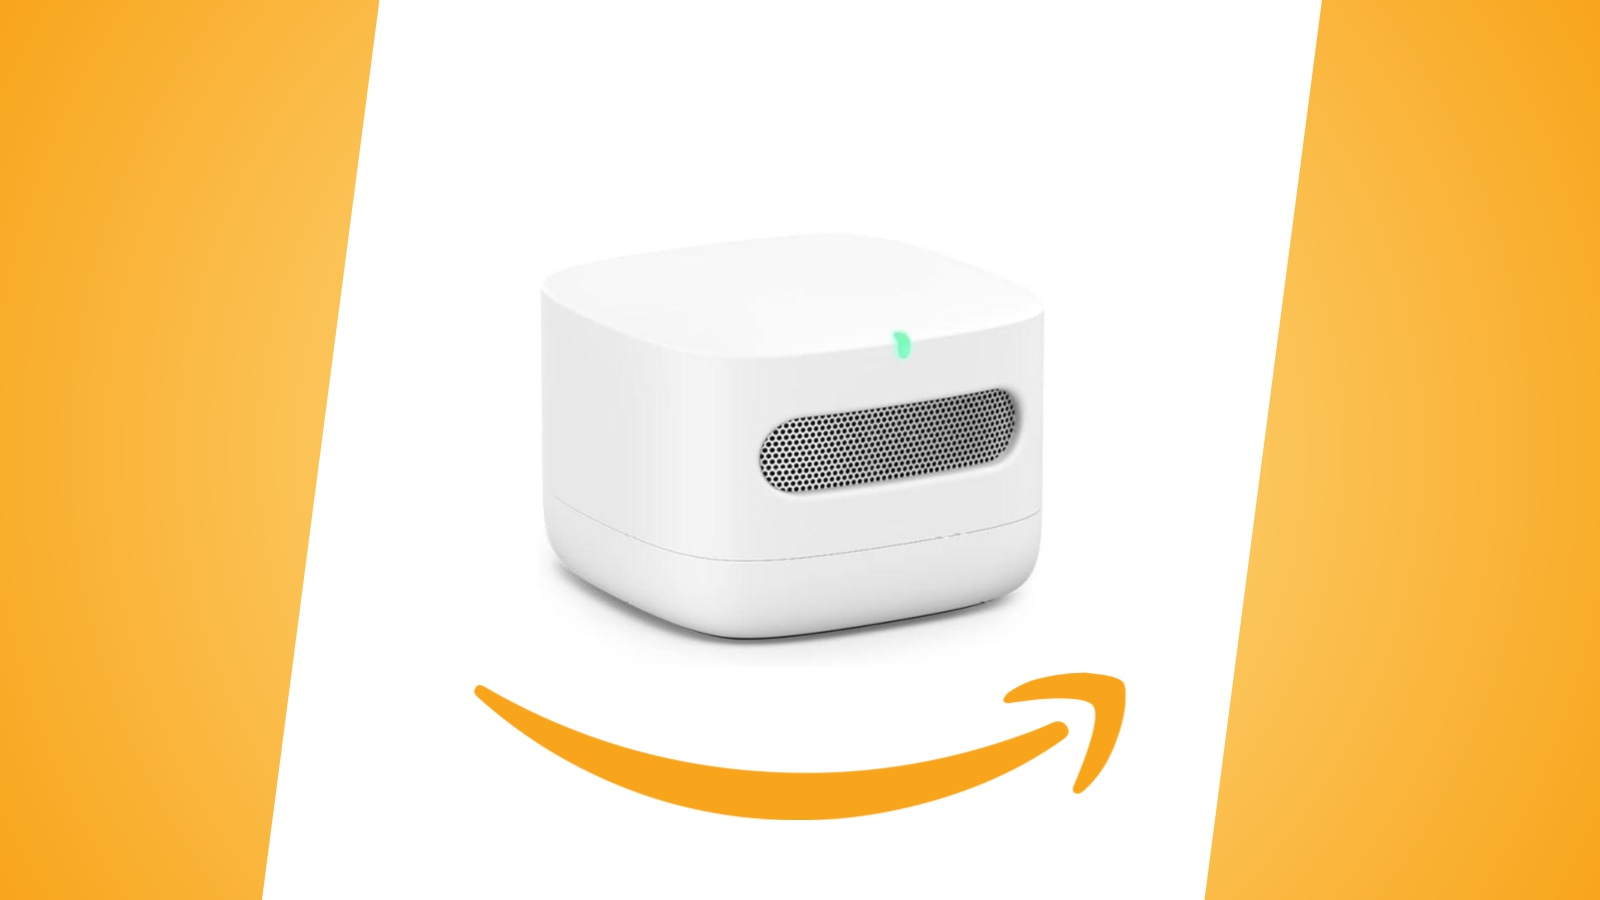 Offerte Amazon: Amazon Smart Air Quality Monitor in sconto per gli abbonati Prime